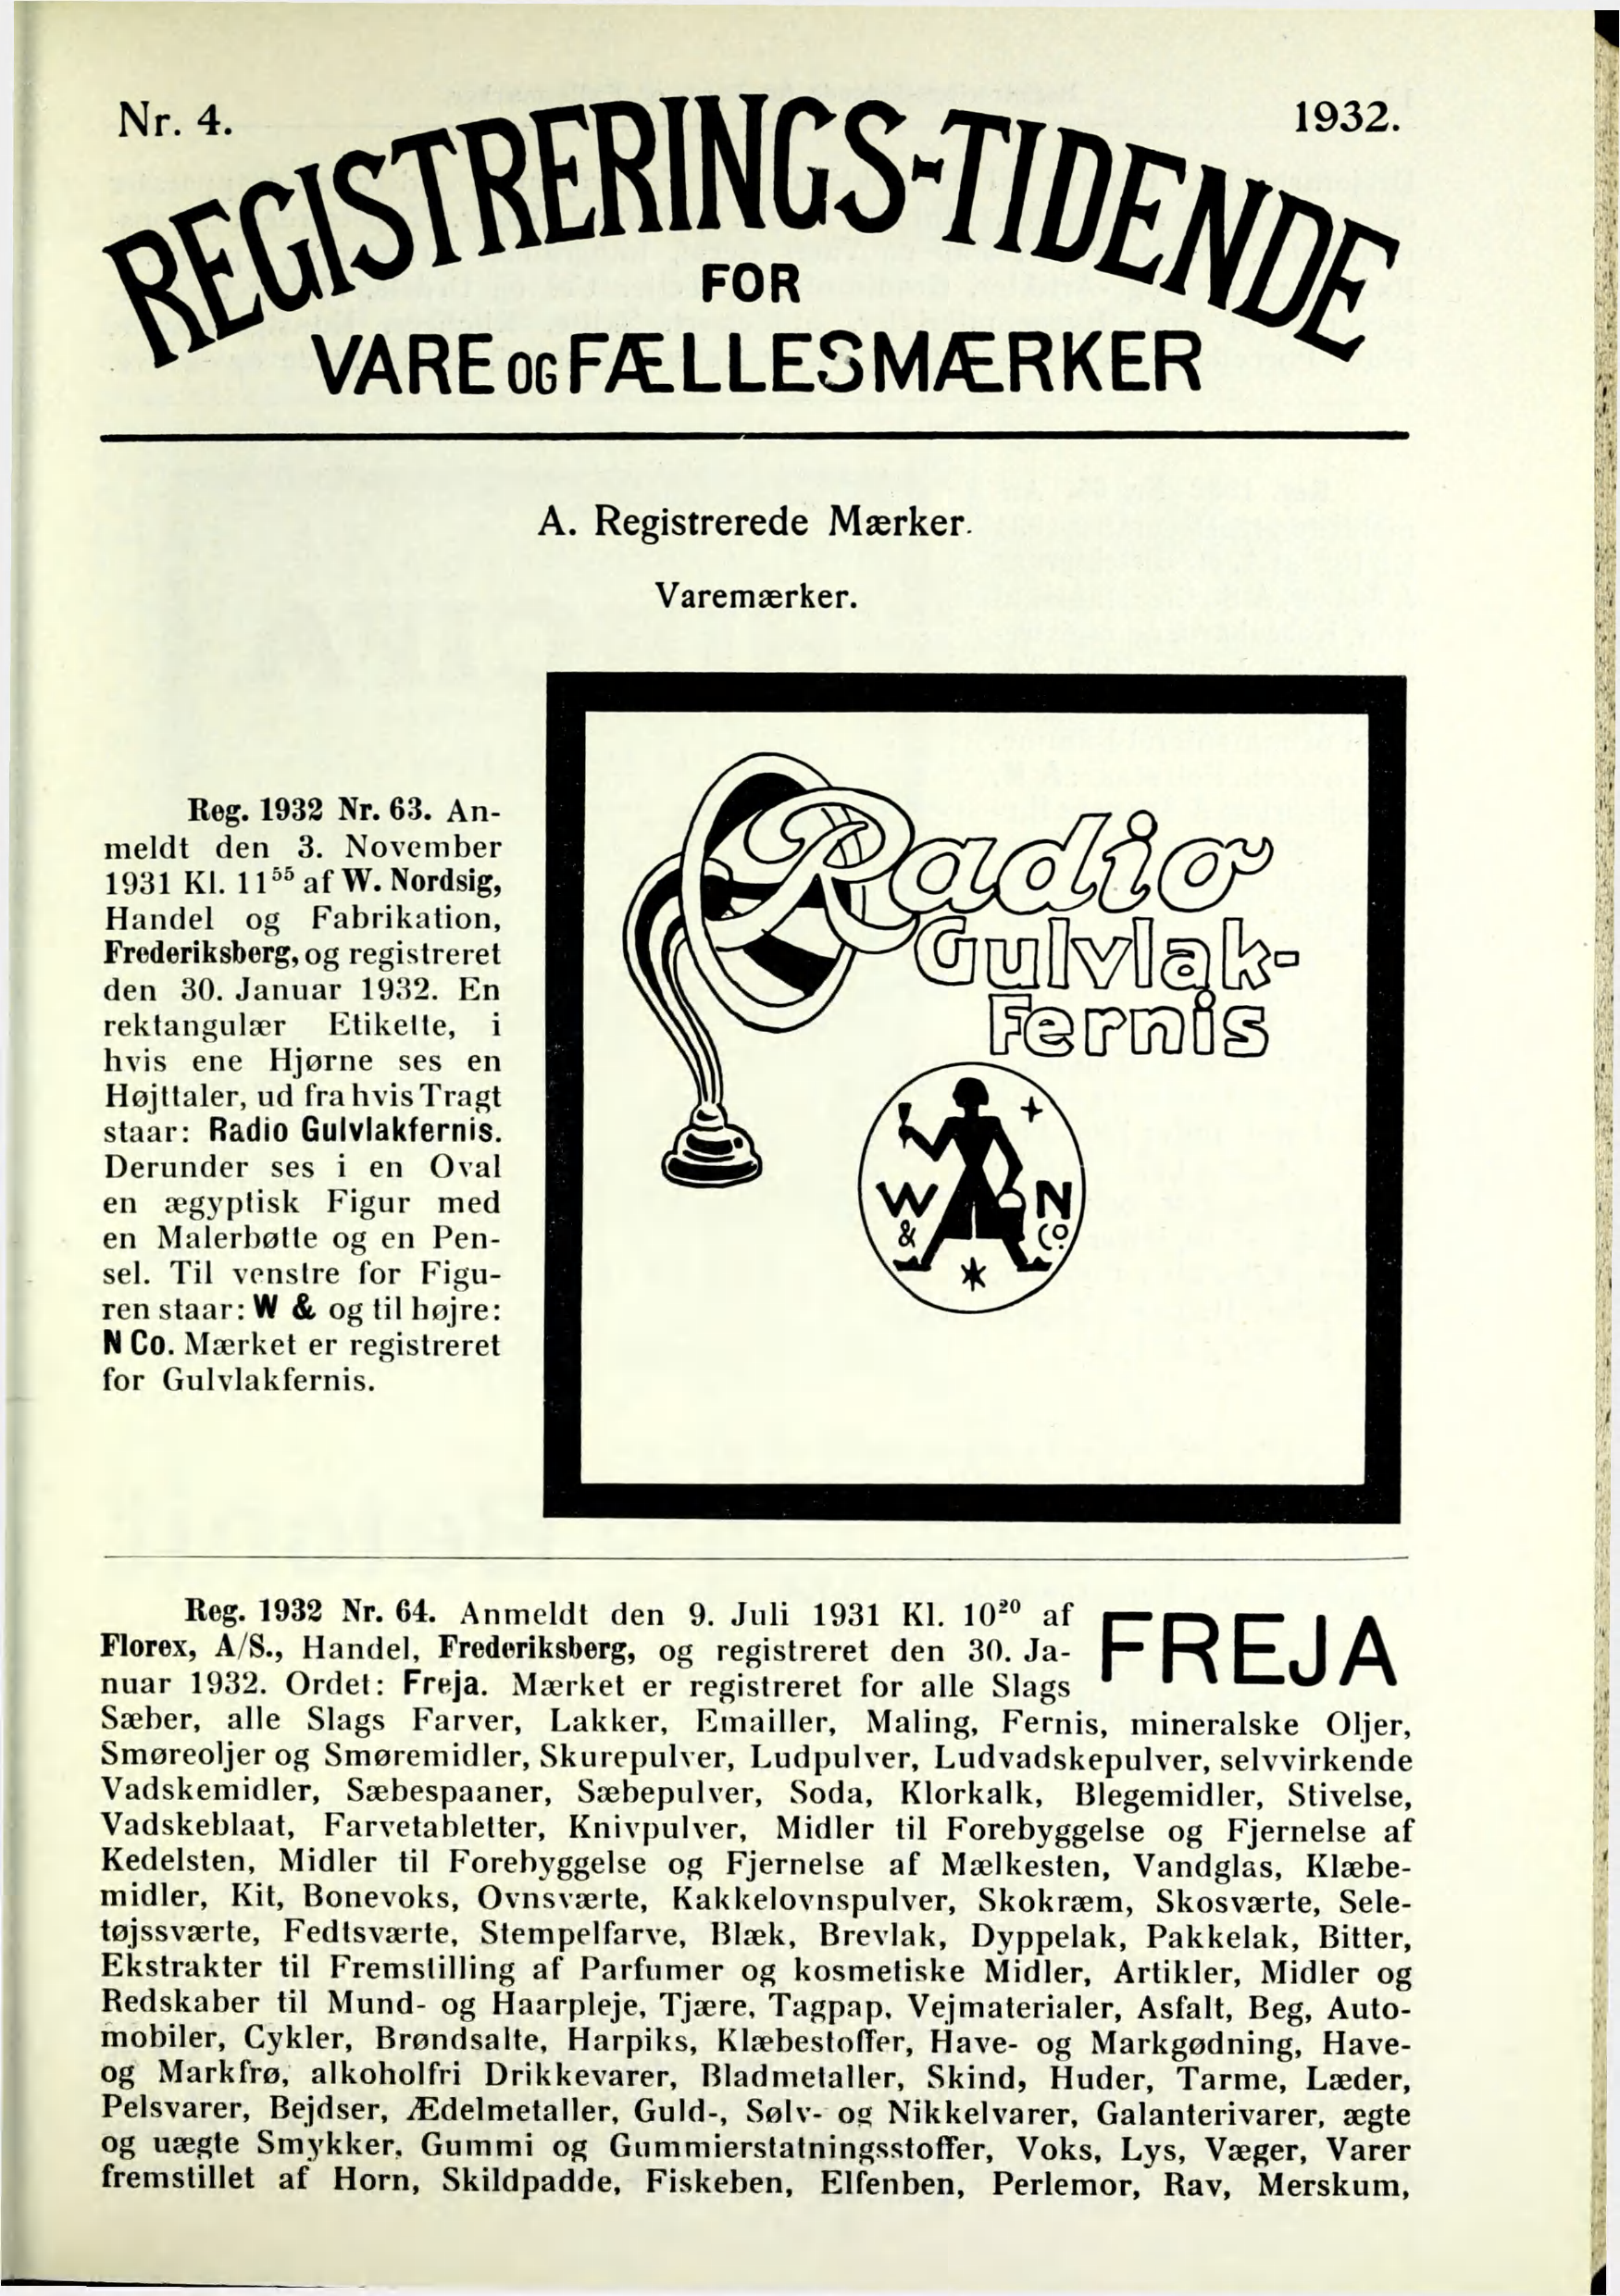 ^ VAREOGFÆLLESMÆRKER ^ A. Registrerede Mærker. Varemærker. Reg. 1932 Nr. 63. Anmeldt den 3. November 1931 Kl. 11^^ af W. Nordsig, Handel og Fabrikation, Frederiksberg, og registreret den 30.